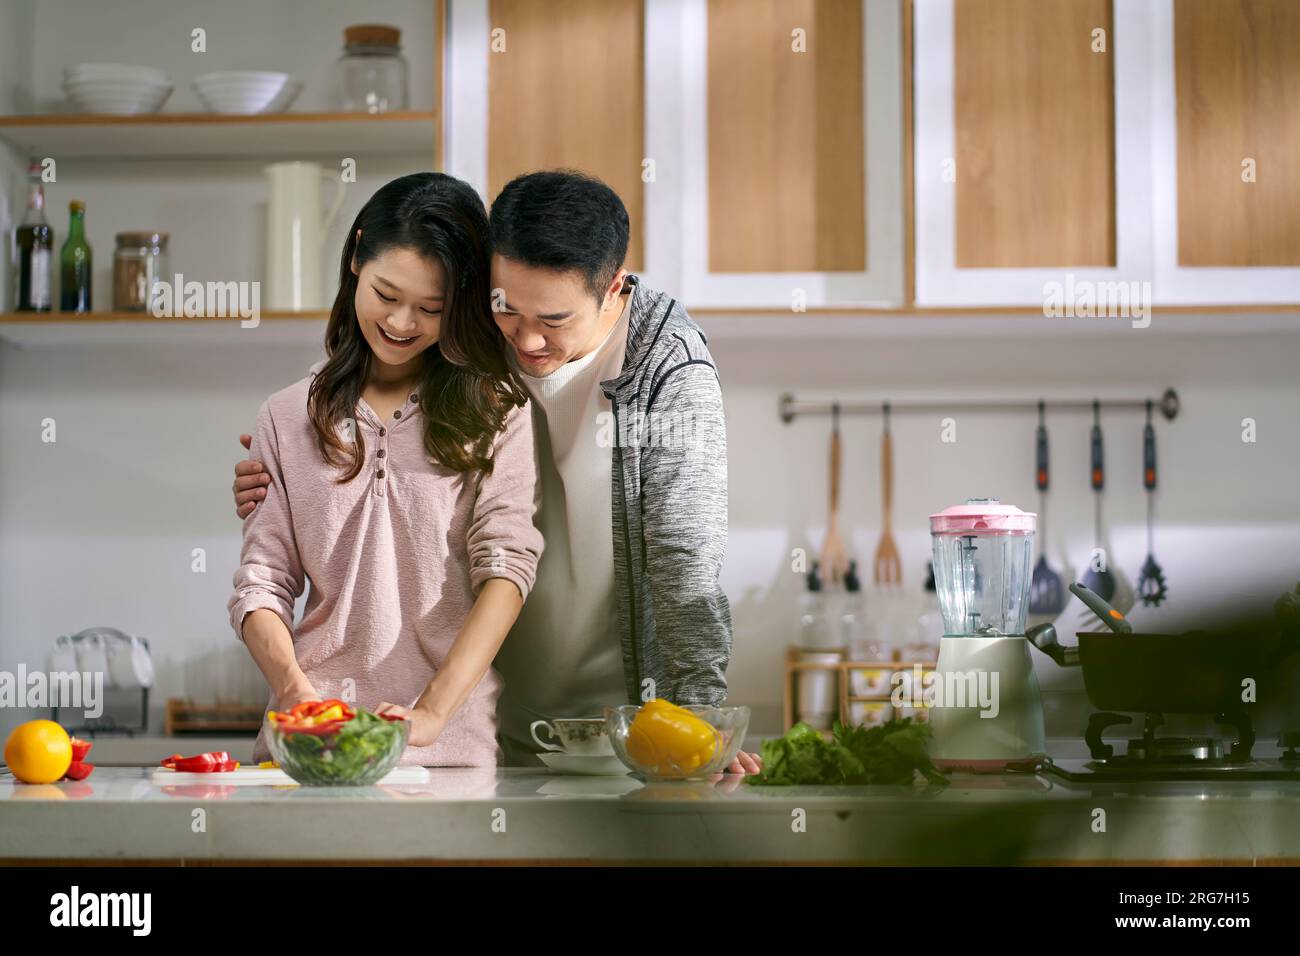 Glückliches, liebevolles junges asiatisches Paar, das zu Hause in der Küche zusammen Essen zubereitete Stockfoto